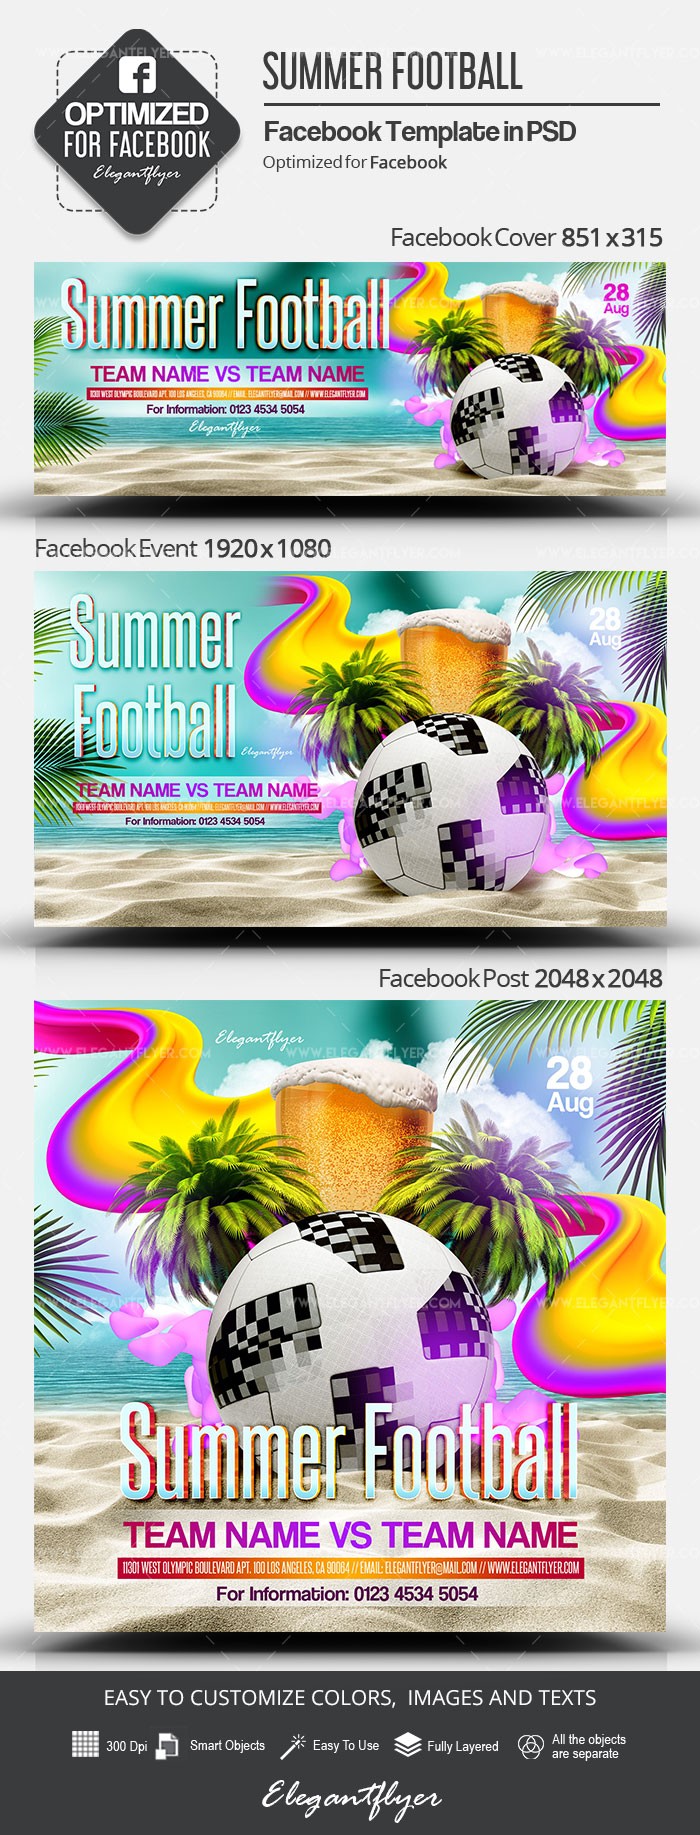 Summer Football Facebook by ElegantFlyer